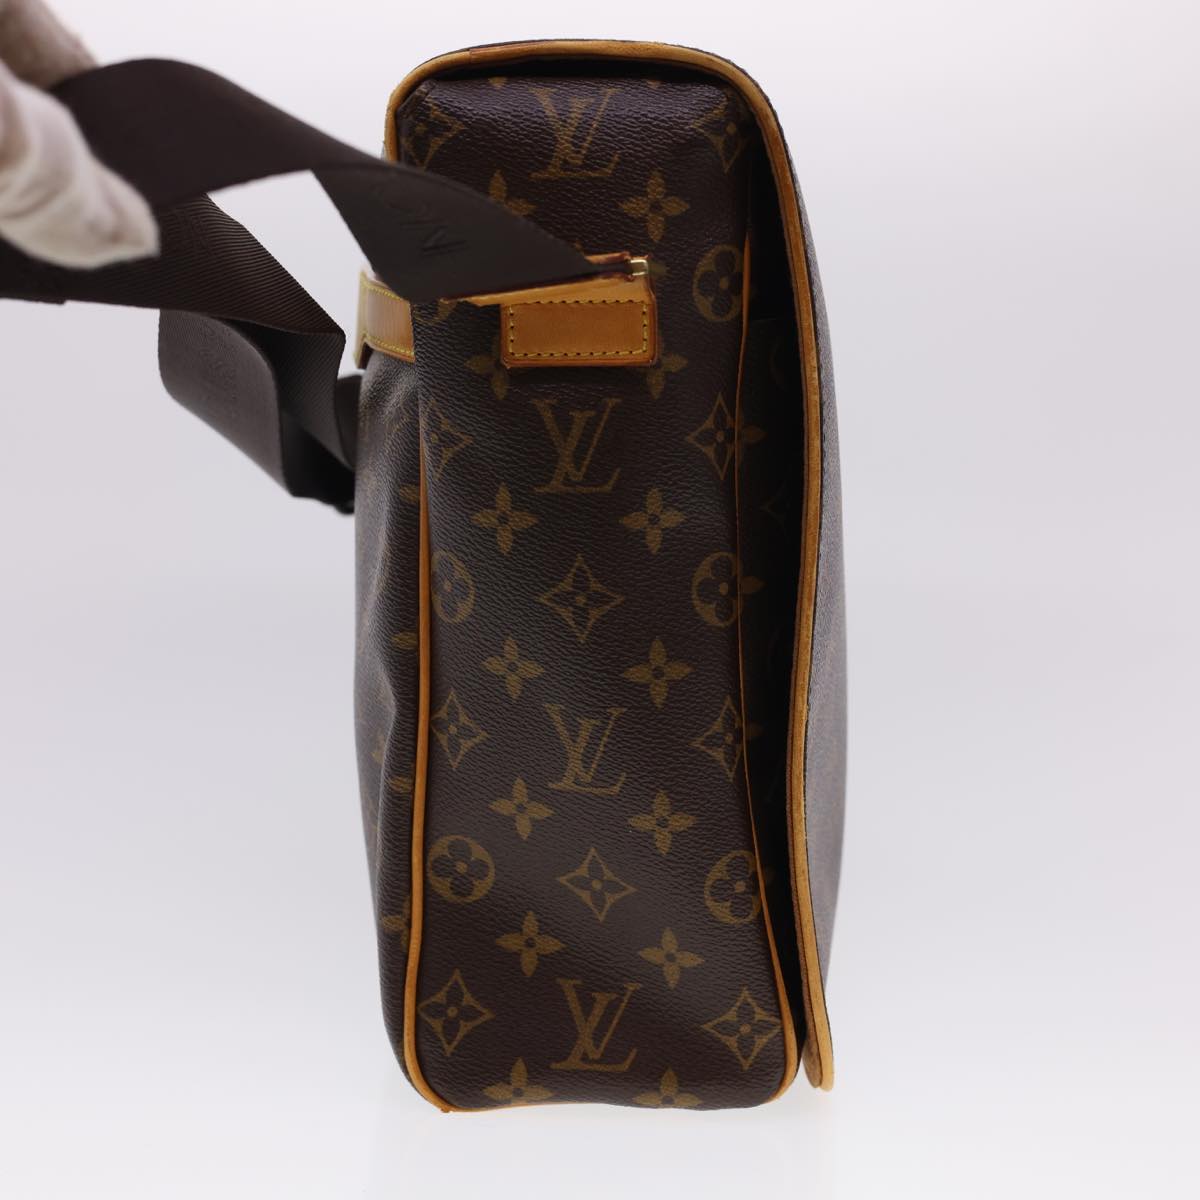 Louis Vuitton Monogram Canvas Abbesses Messenger Bag